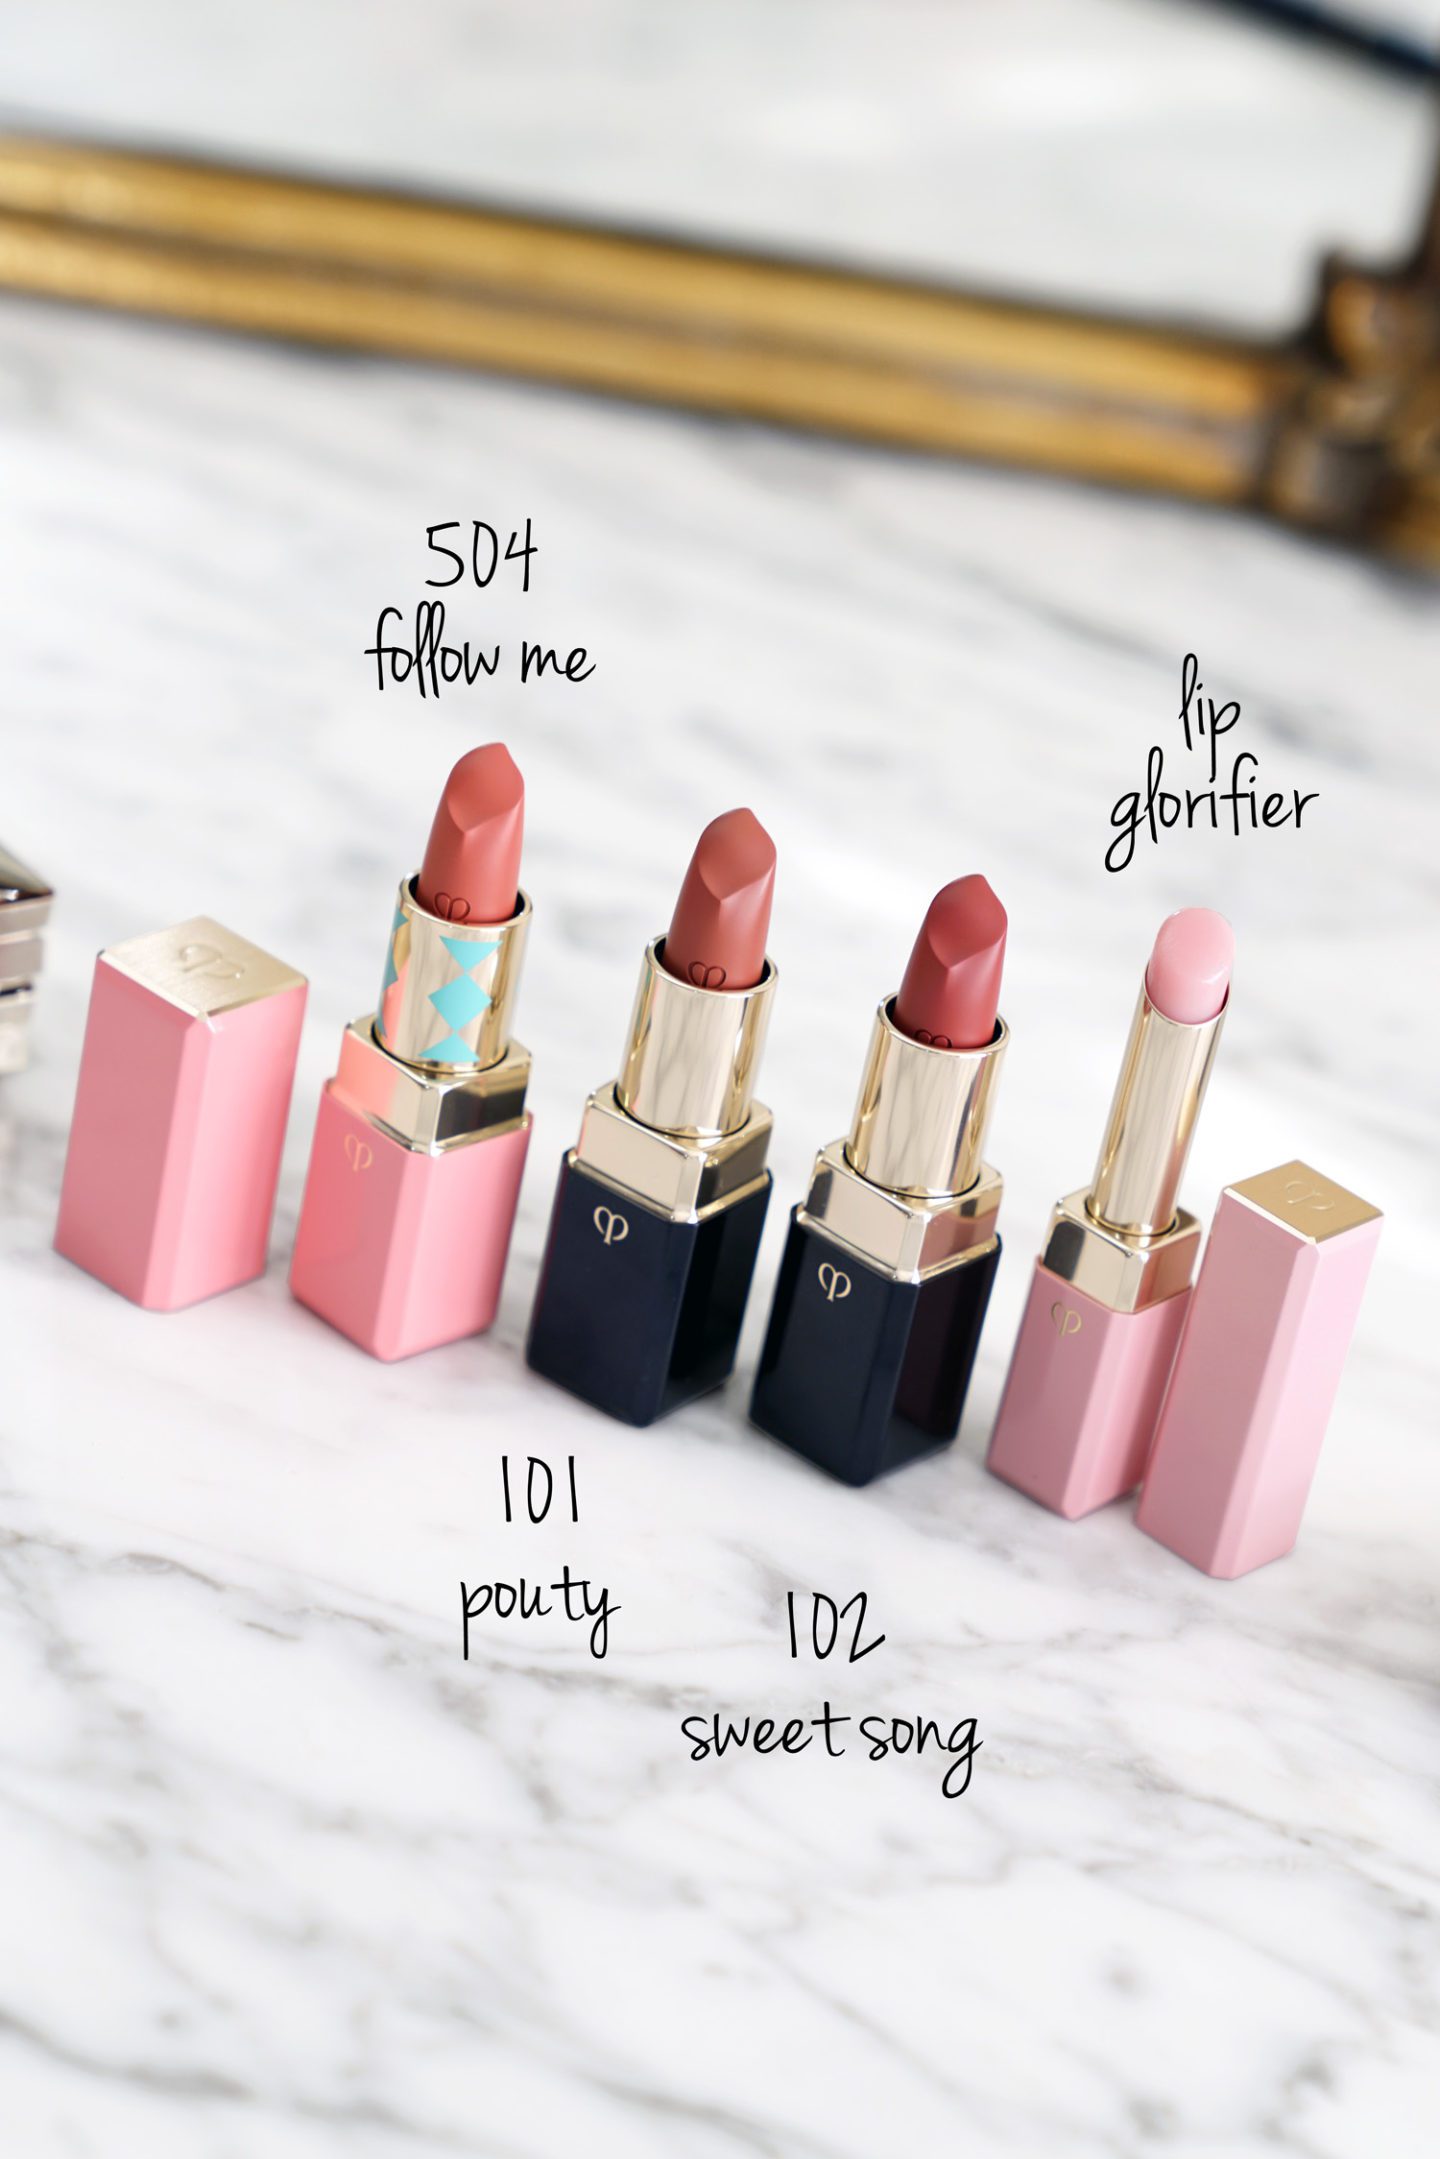 Cle de Peau Lipstick Cashmere and Lip Glorifier Review